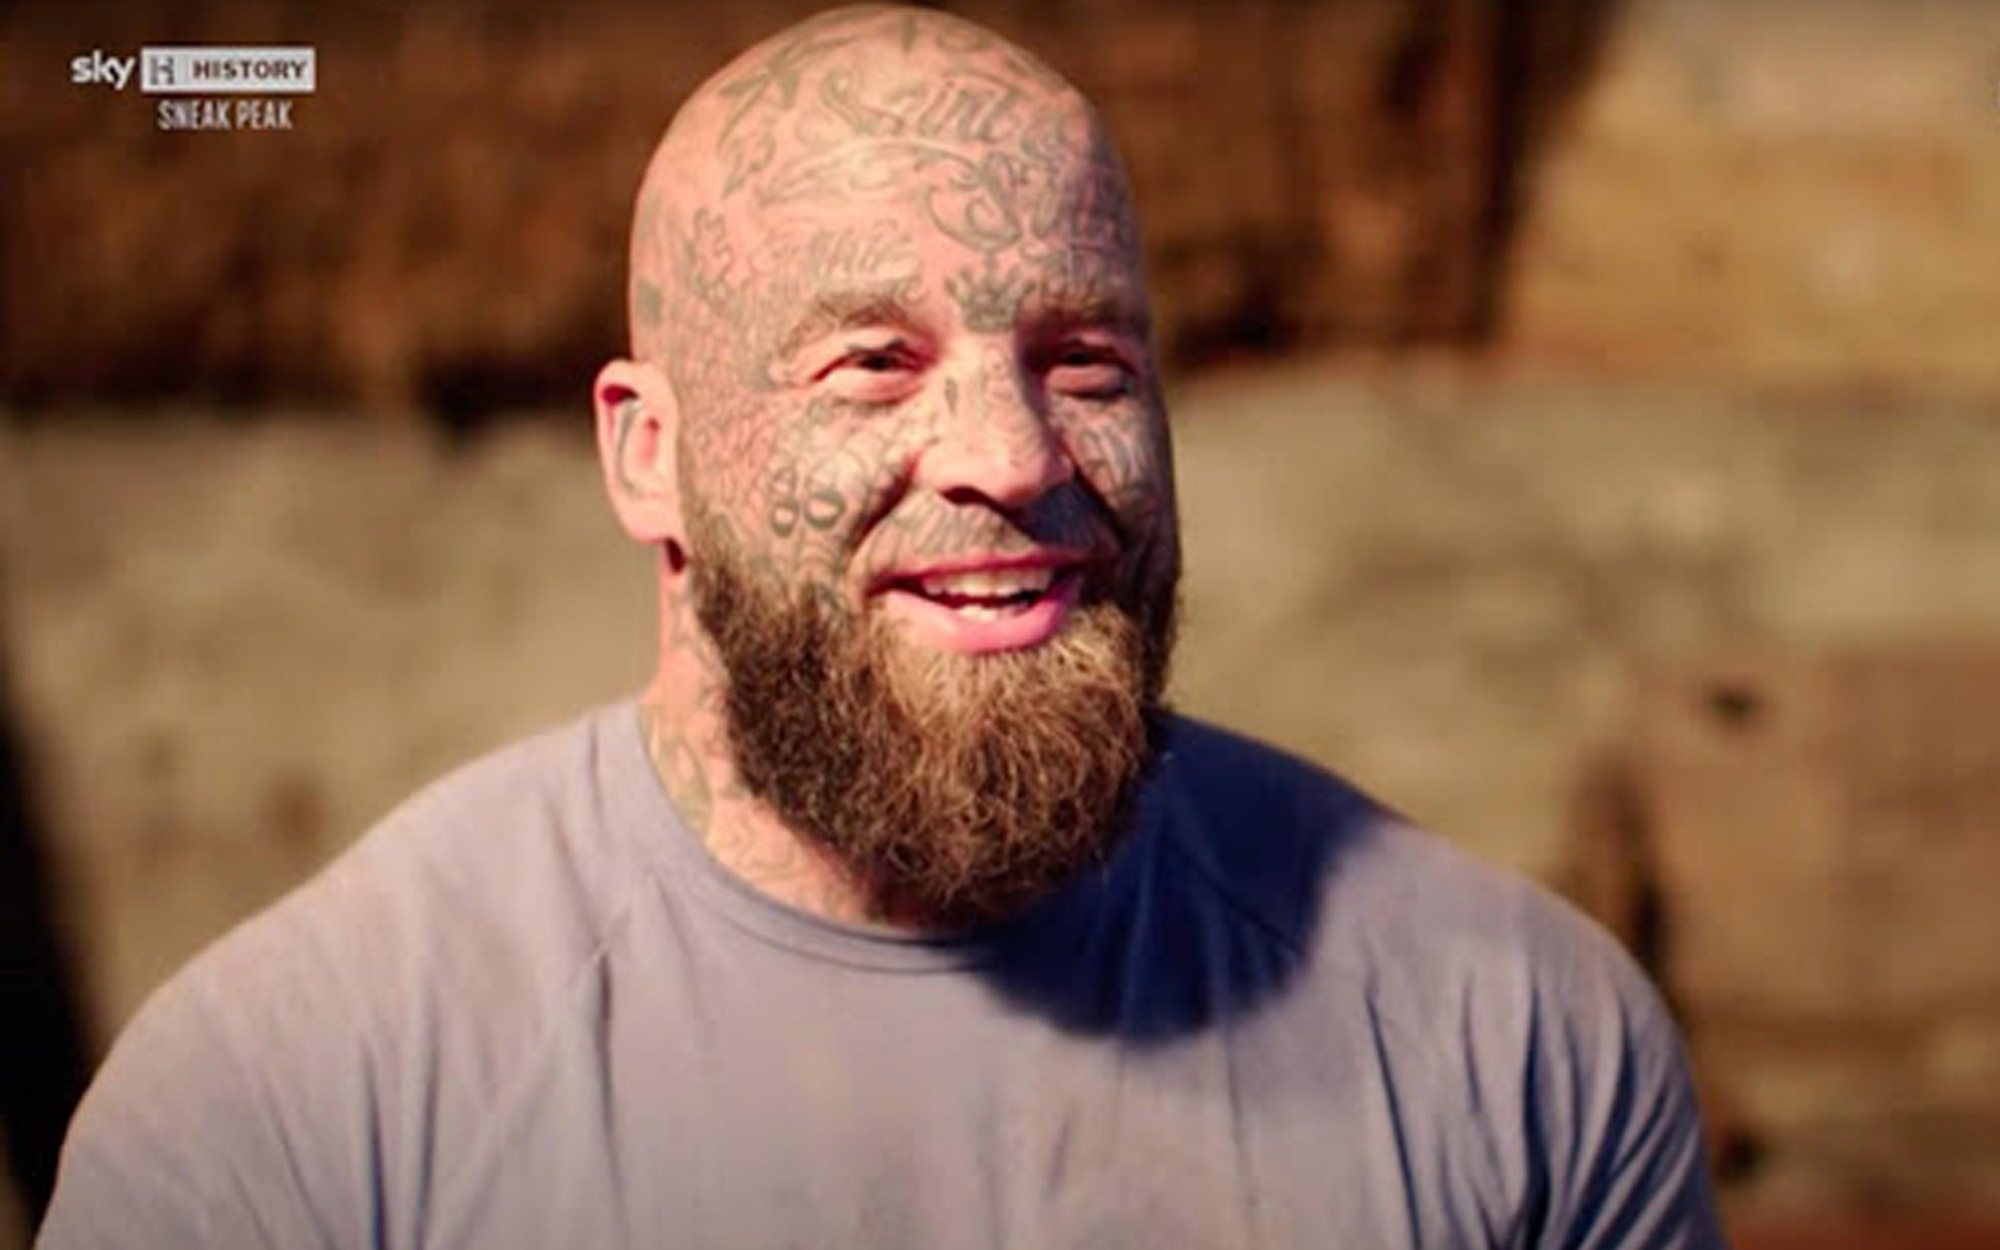 Sky History cancela 'The Chop' por los tatuajes "de extrema derecha" de un concursante